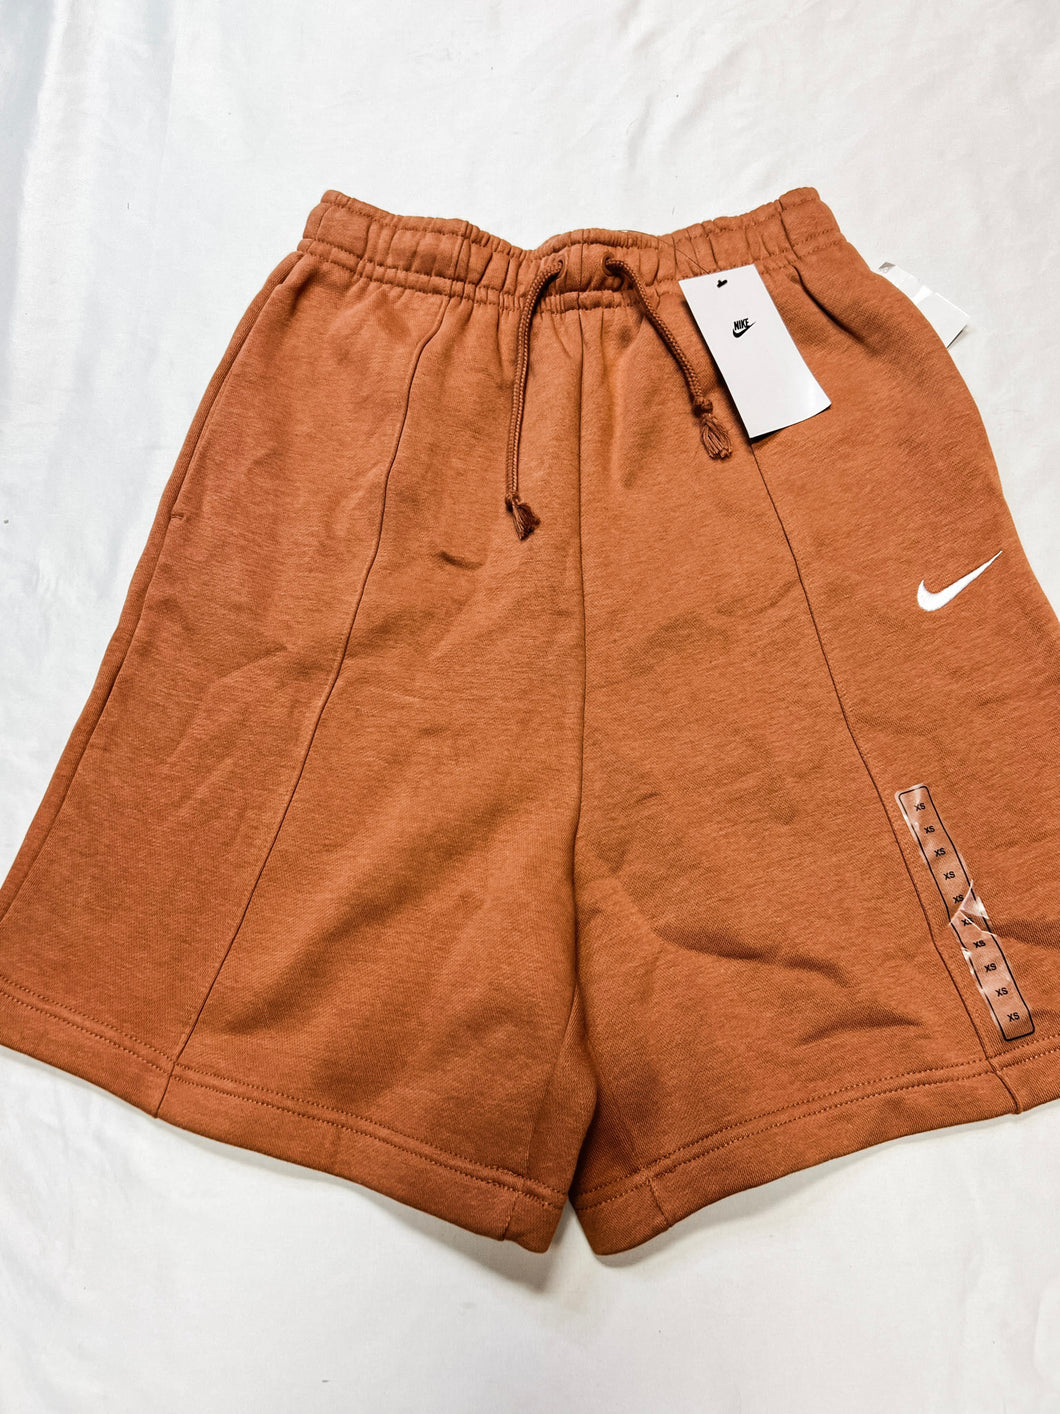 Nike Athletic Shorts Size Extra Small *